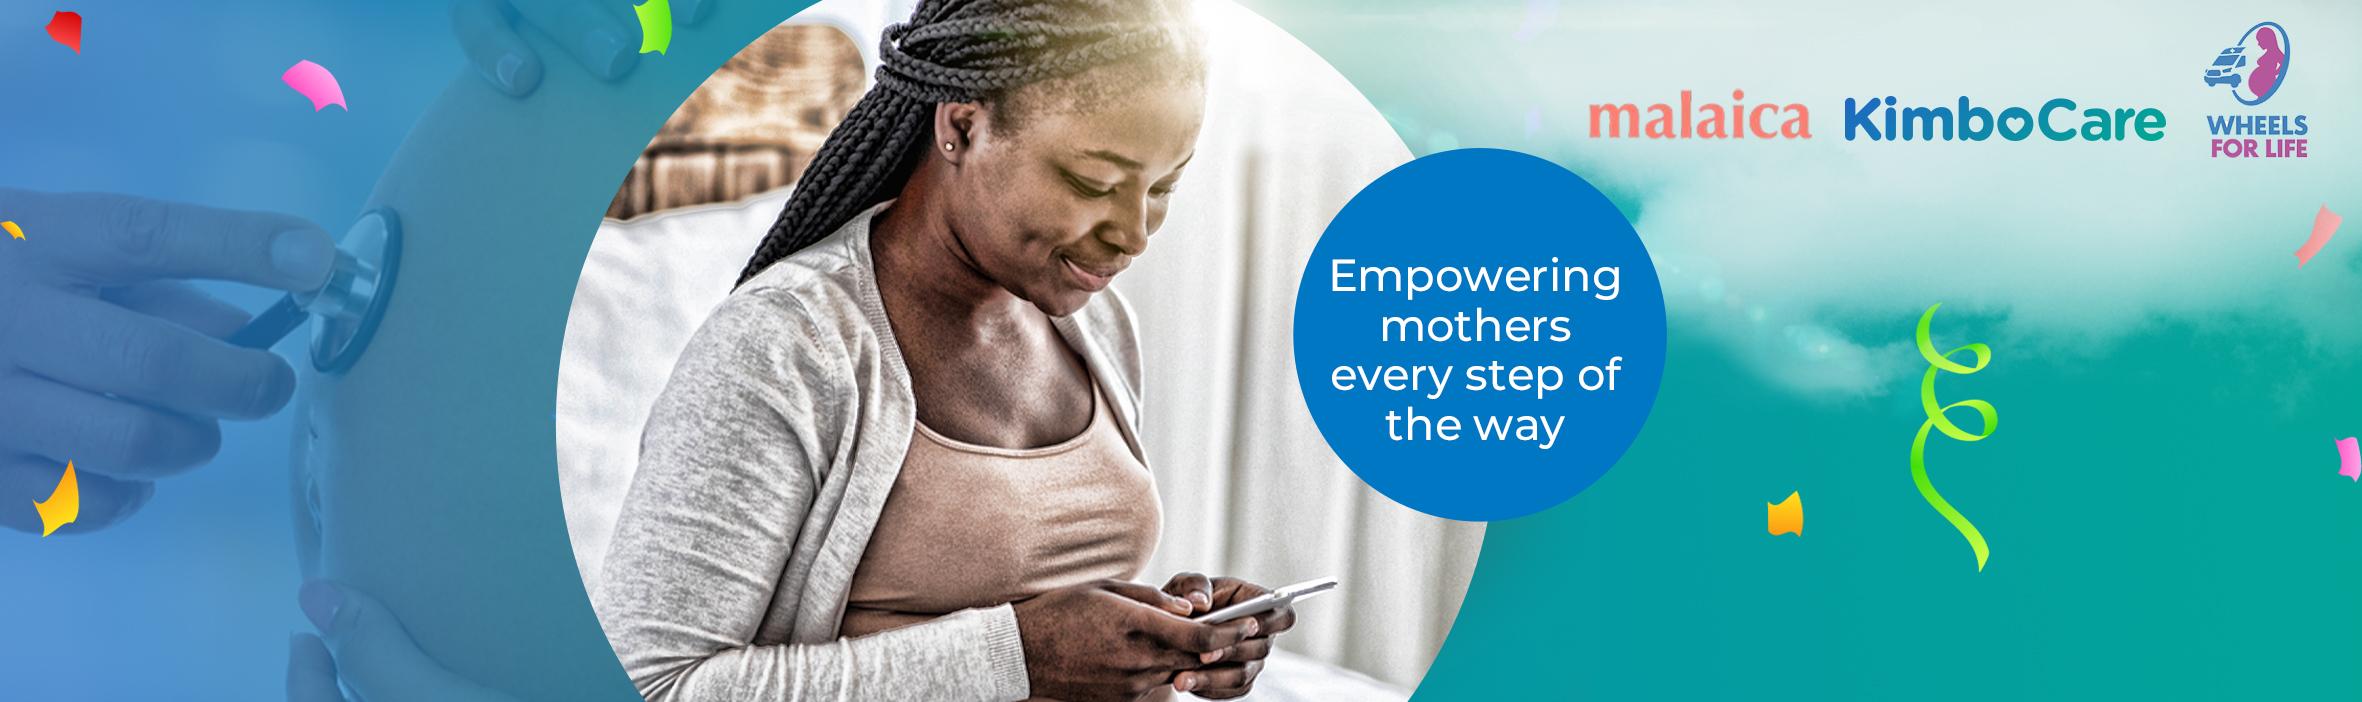 KimboCare s'associe à Malaica et Wheels for Life pour permettre un continuum de soins dans le domaine de la santé maternelle.